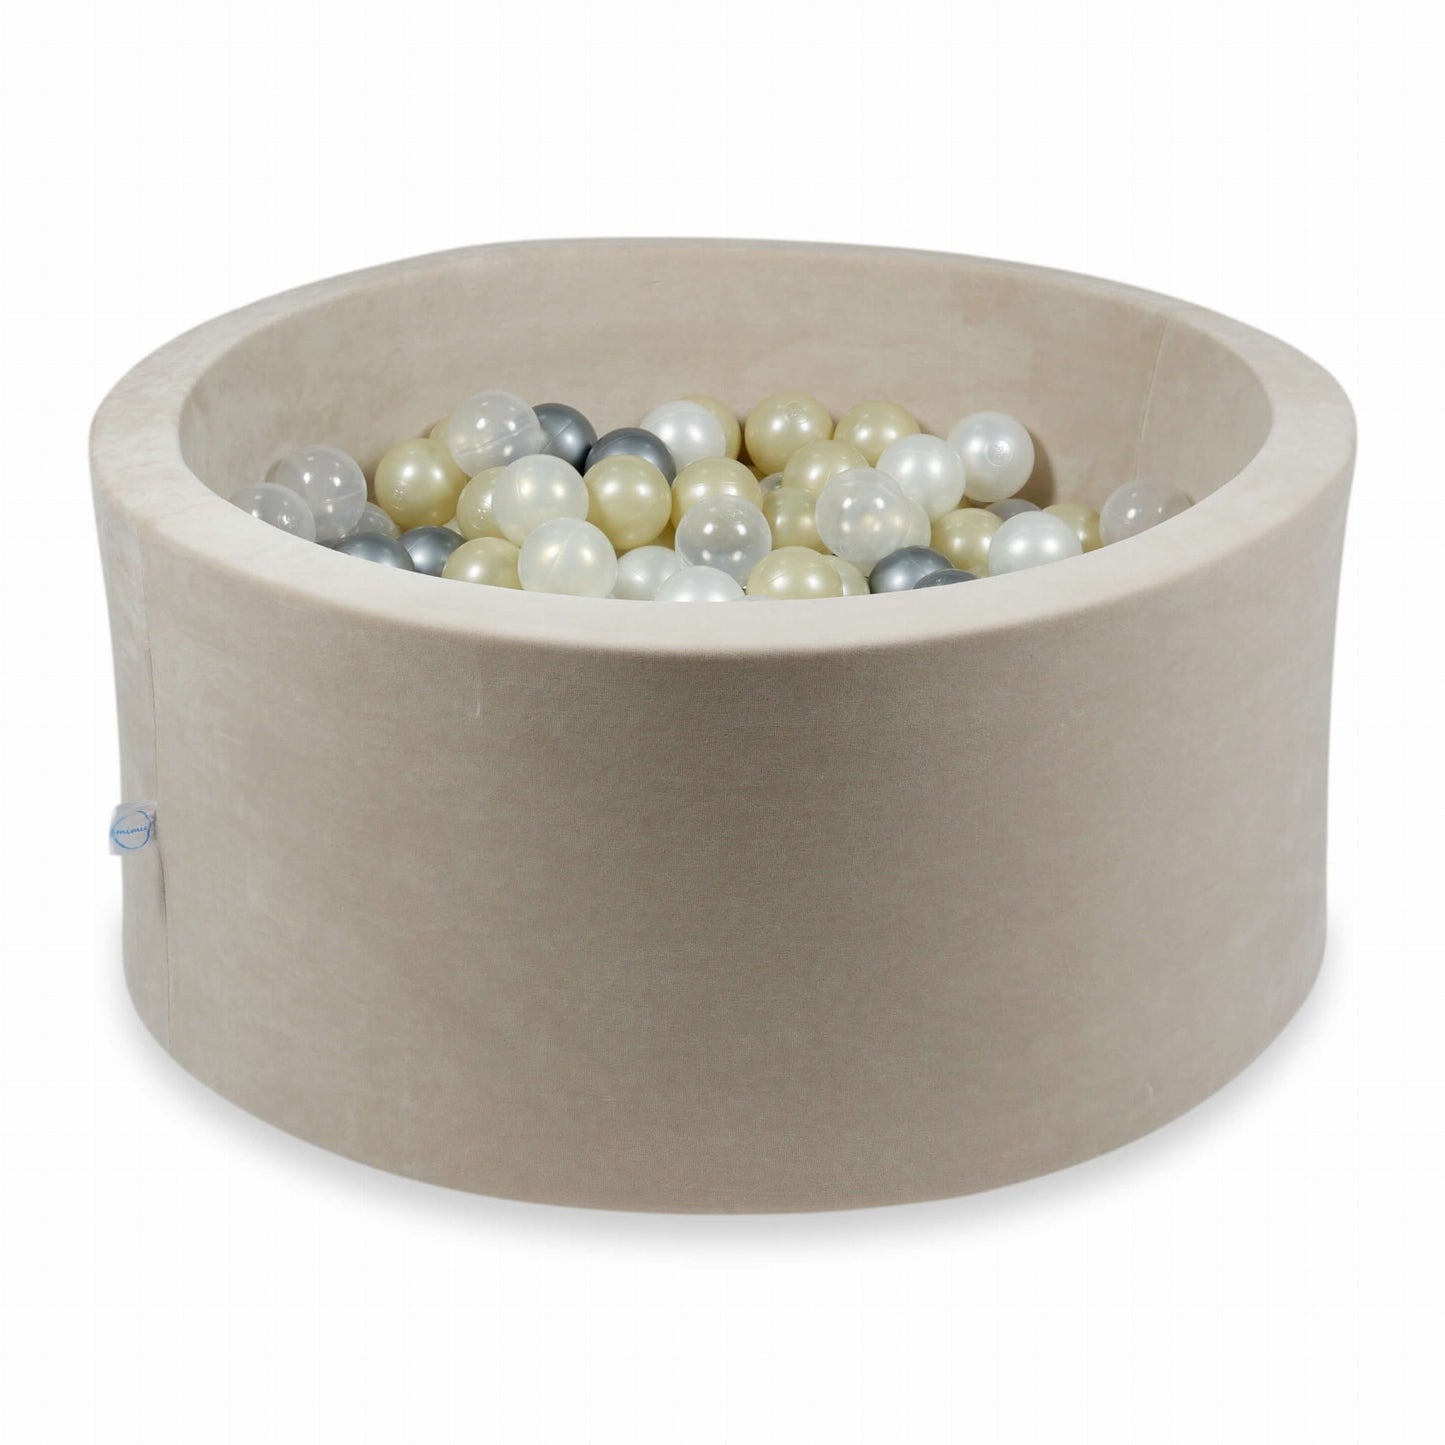 Piscine à Balles 90x40 Velvet Soft beige avec balles 300 pcs (or clair, iridescent, perlé, transparent, argent)